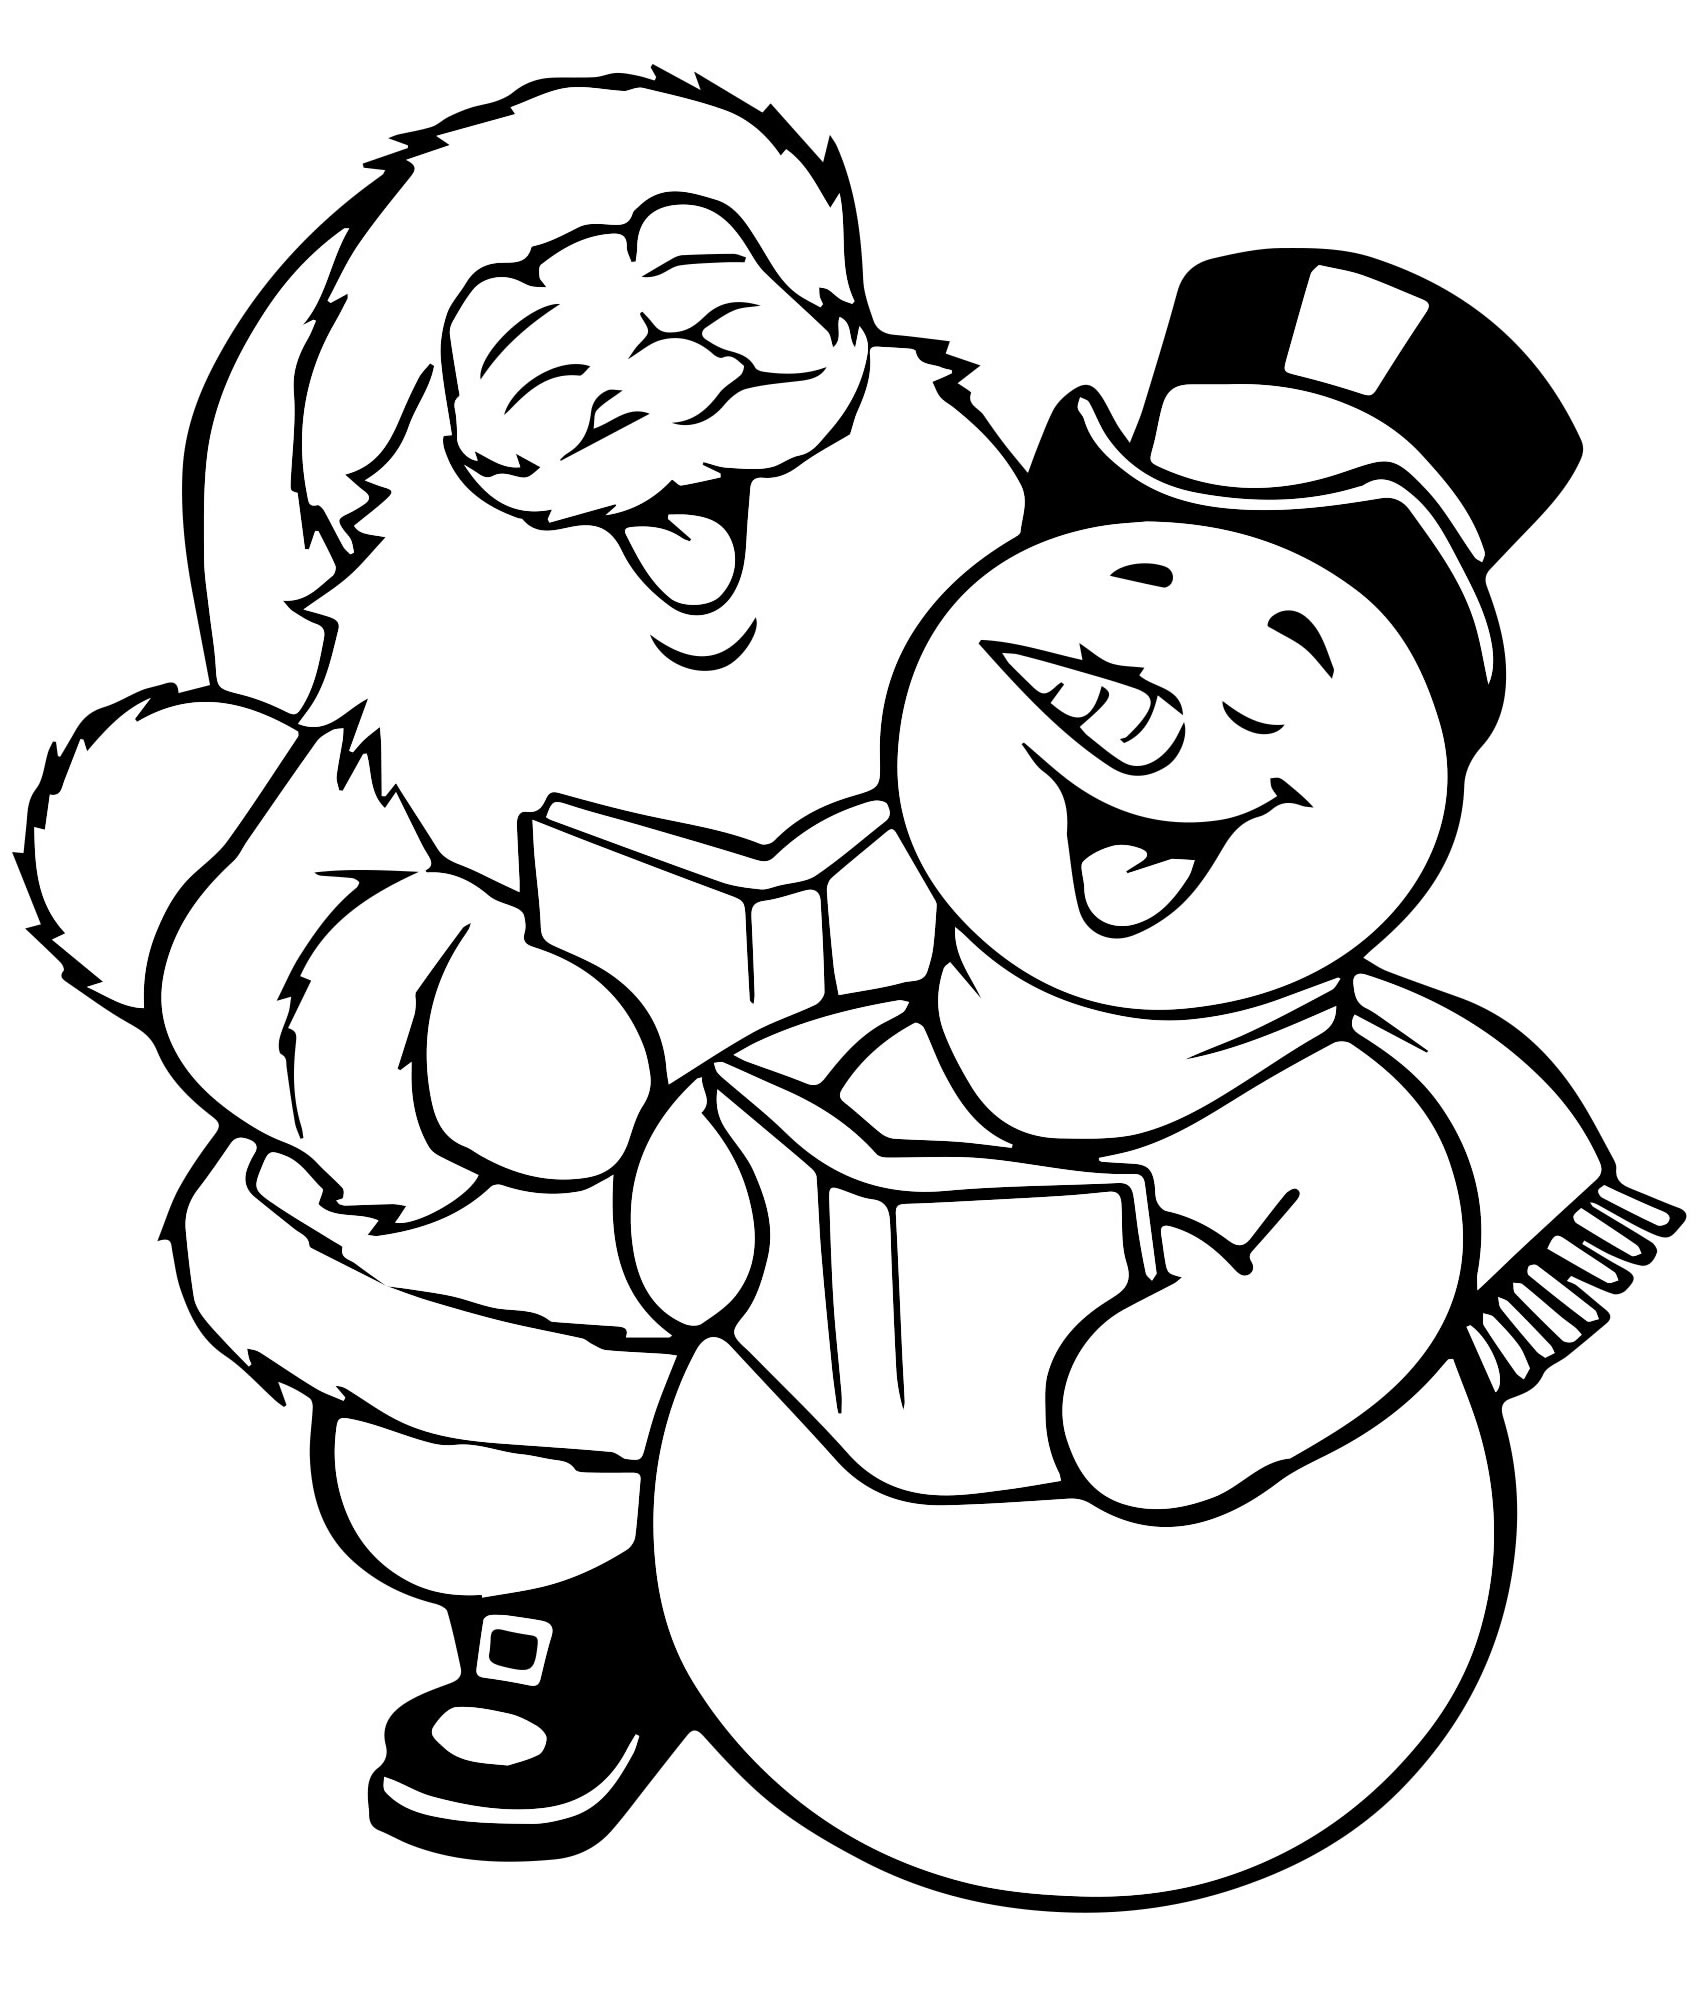 Дед Мороз и снеговик раскраска для детей